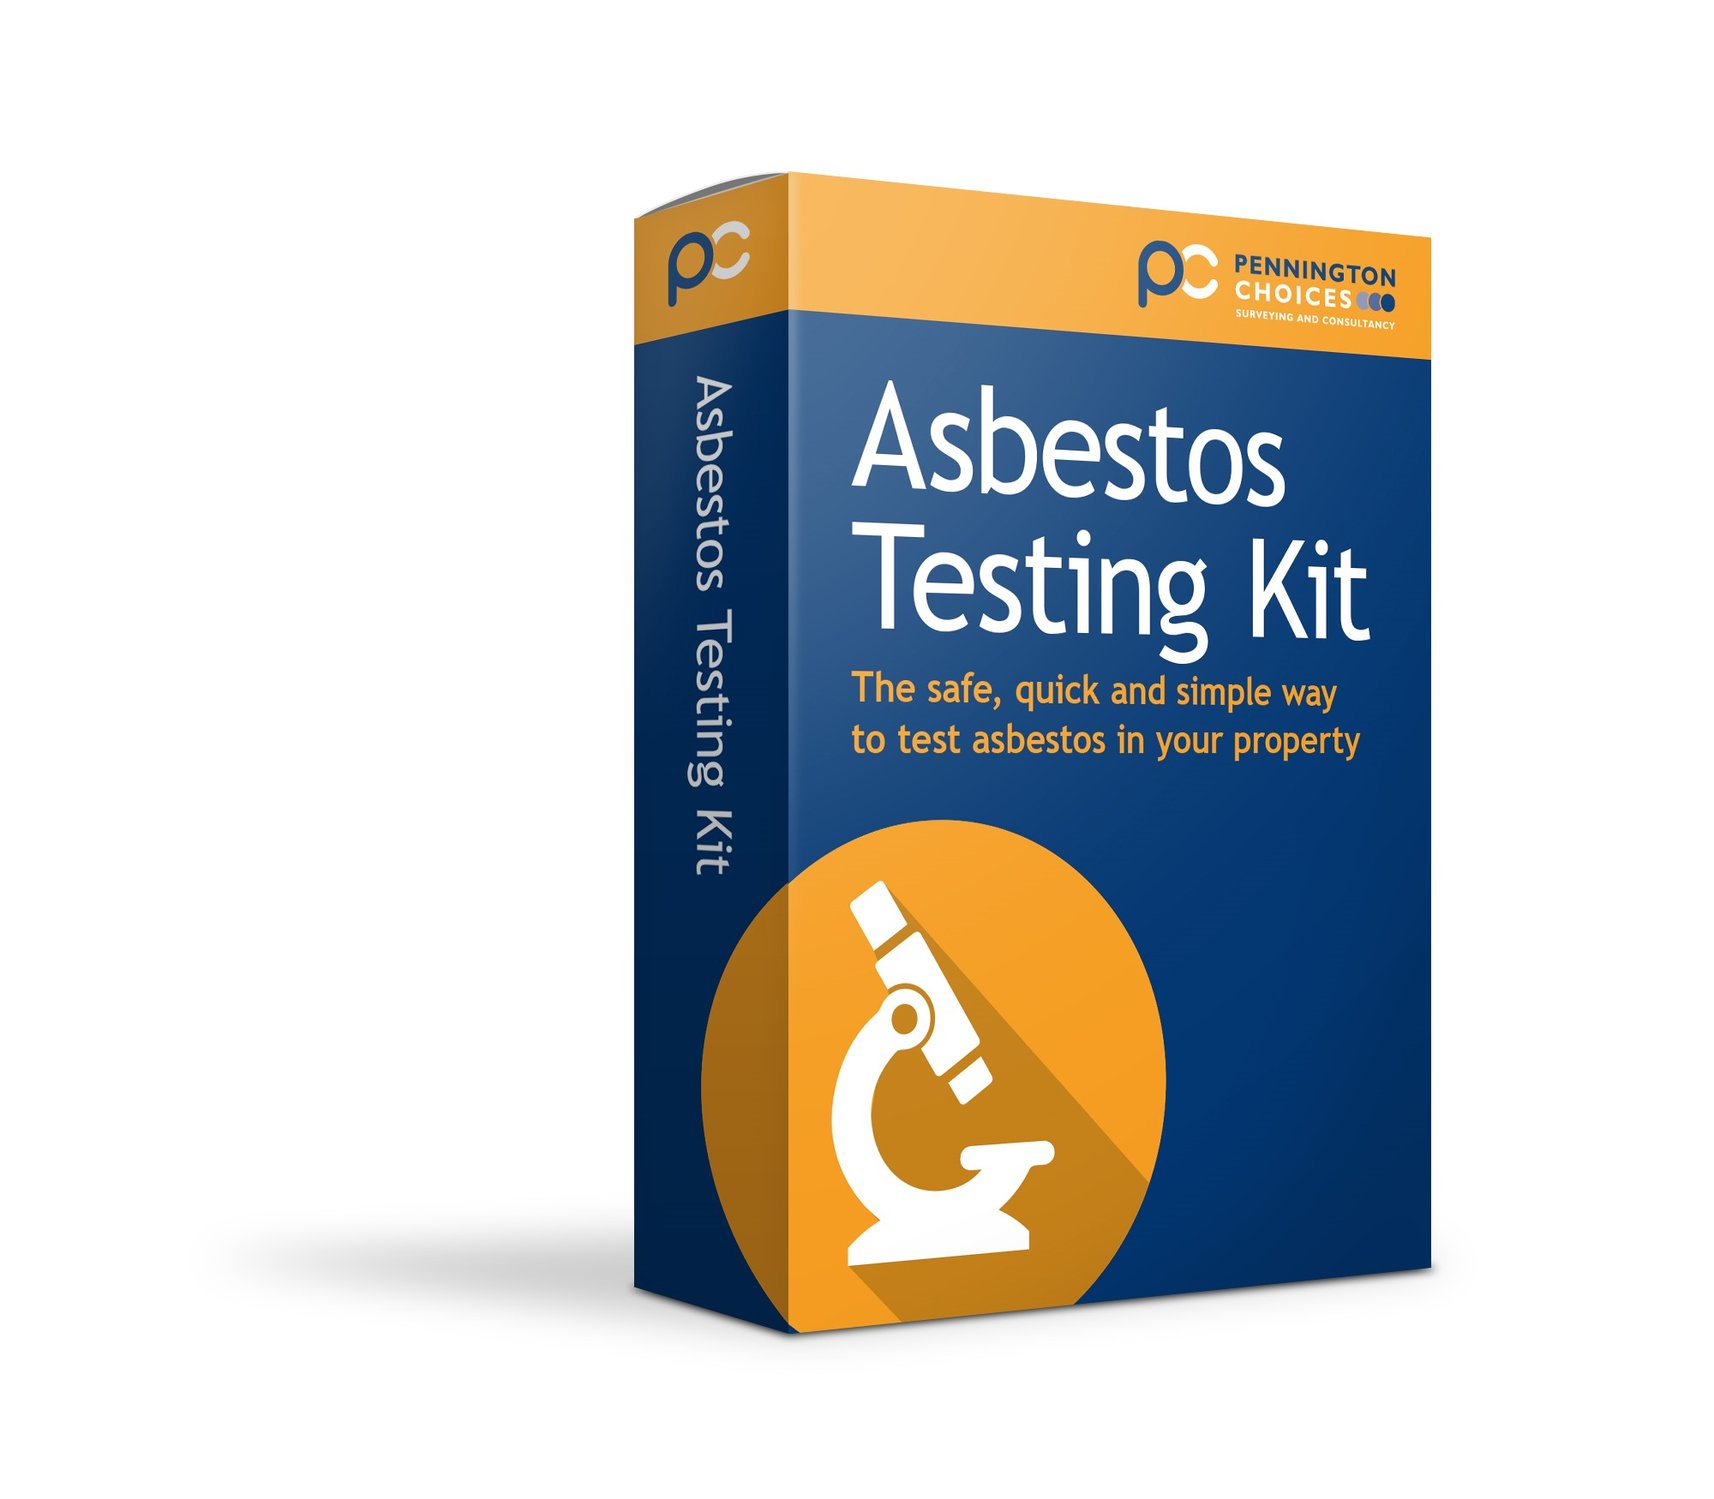 Asbestos Testing Kit Image June 2018